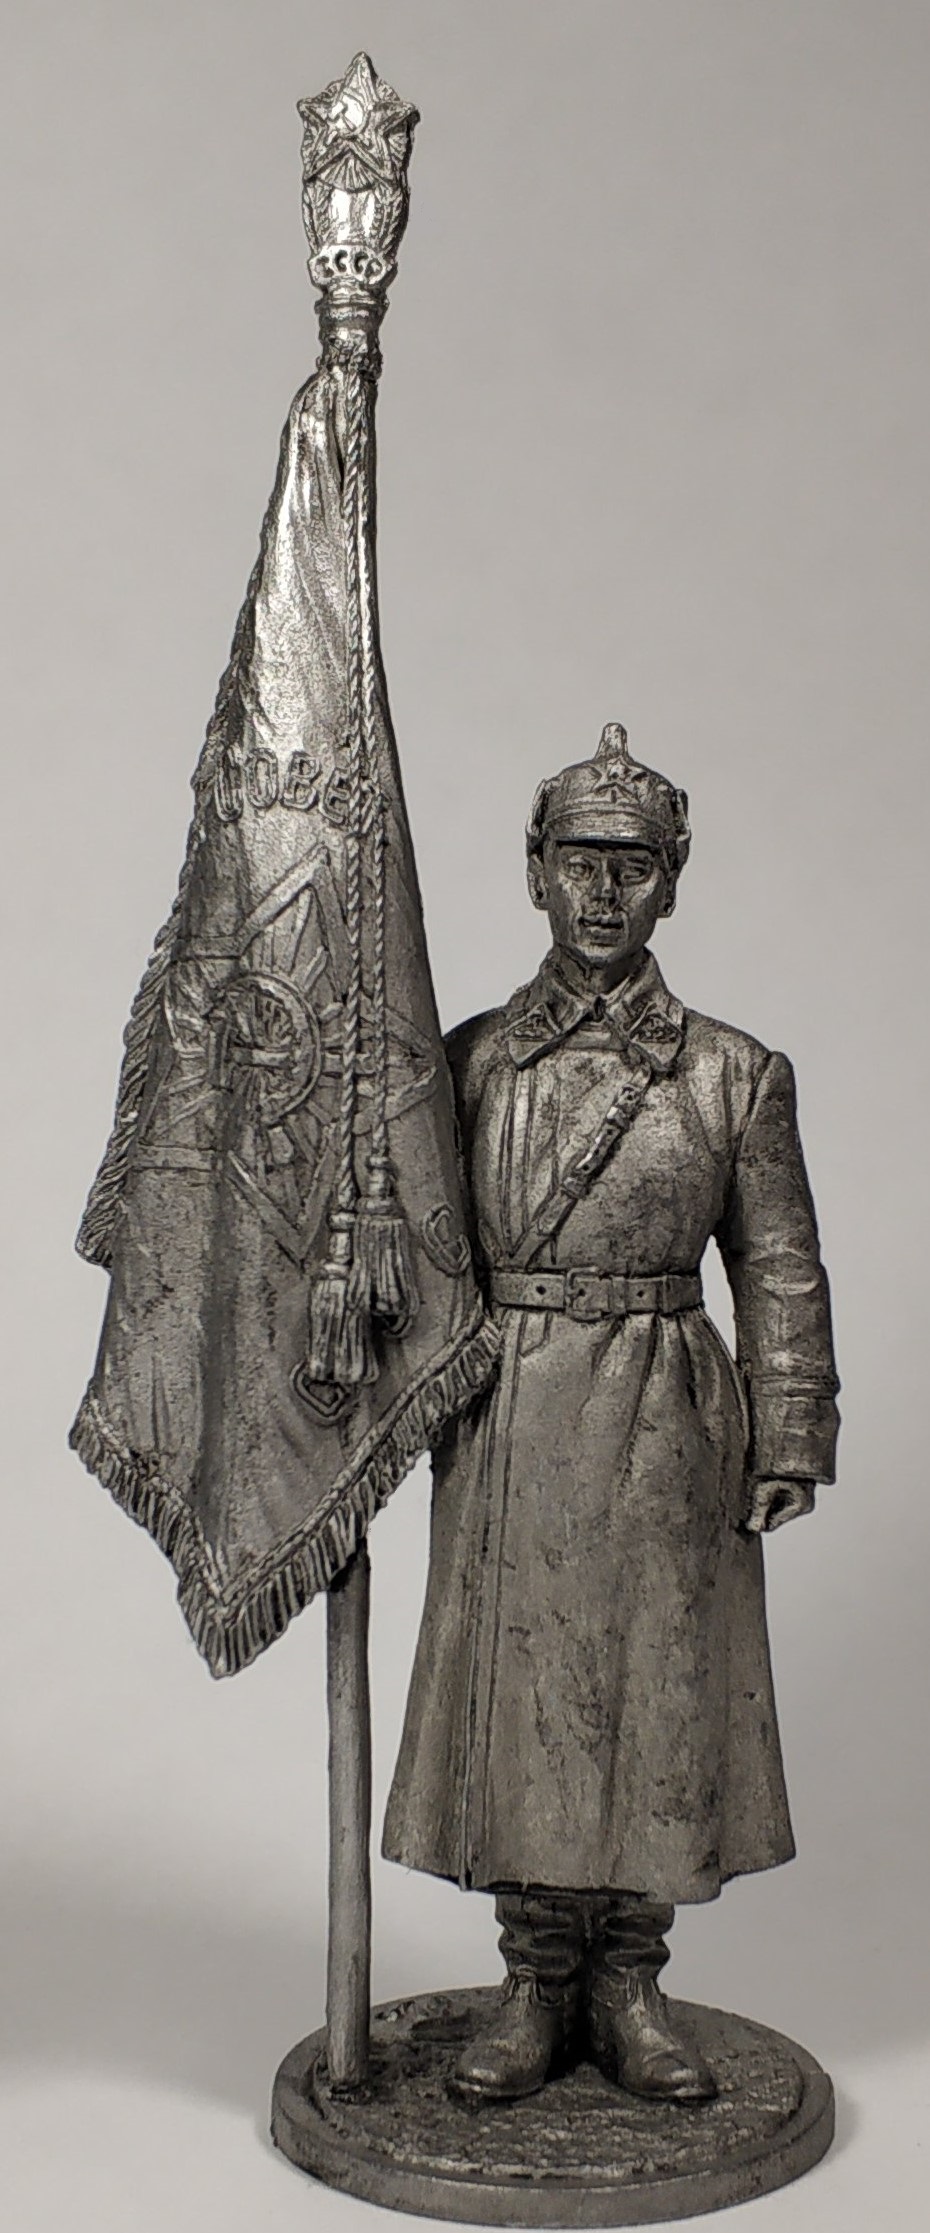 WW2-46  миниатюра  Старший сержант РККА со знаменем 1941г.  СССР